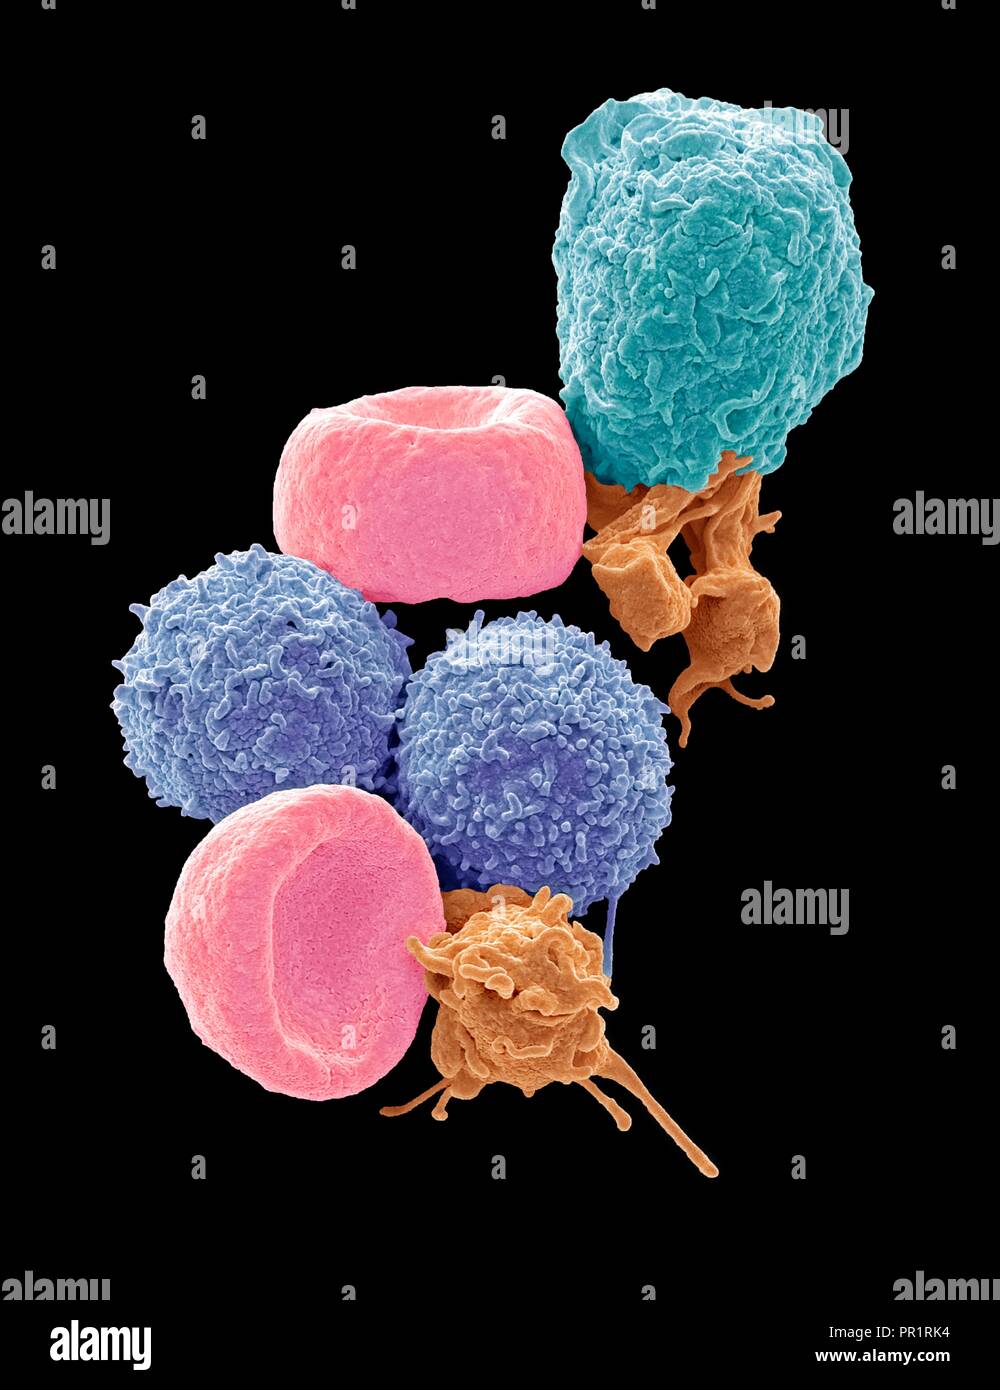 Blutzellen. Farbige Scanning Electron Micrograph (SEM) der menschlichen roten Blutkörperchen (Erythrozyten), weißen Blutkörperchen (Leukozyten, Blau und Magenta) und Blutplättchen (Thrombozyten, Orange). Die Scheibenförmigen, biconcave Erythrozyten transportieren Sauerstoff zu den Zellen des Körpers und Kohlendioxid in die Lunge zu entfernen. Leukozyten sind Teil des Immunsystems, die Verteidigung des Körpers gegen eine Infektion durch die Aufnahme von Pathogenen durch Phagozytose oder durch die Produktion von Antikörpern. Vergrößerung: x5000, wenn 10 Zentimeter hohe gedruckt. Stockfoto